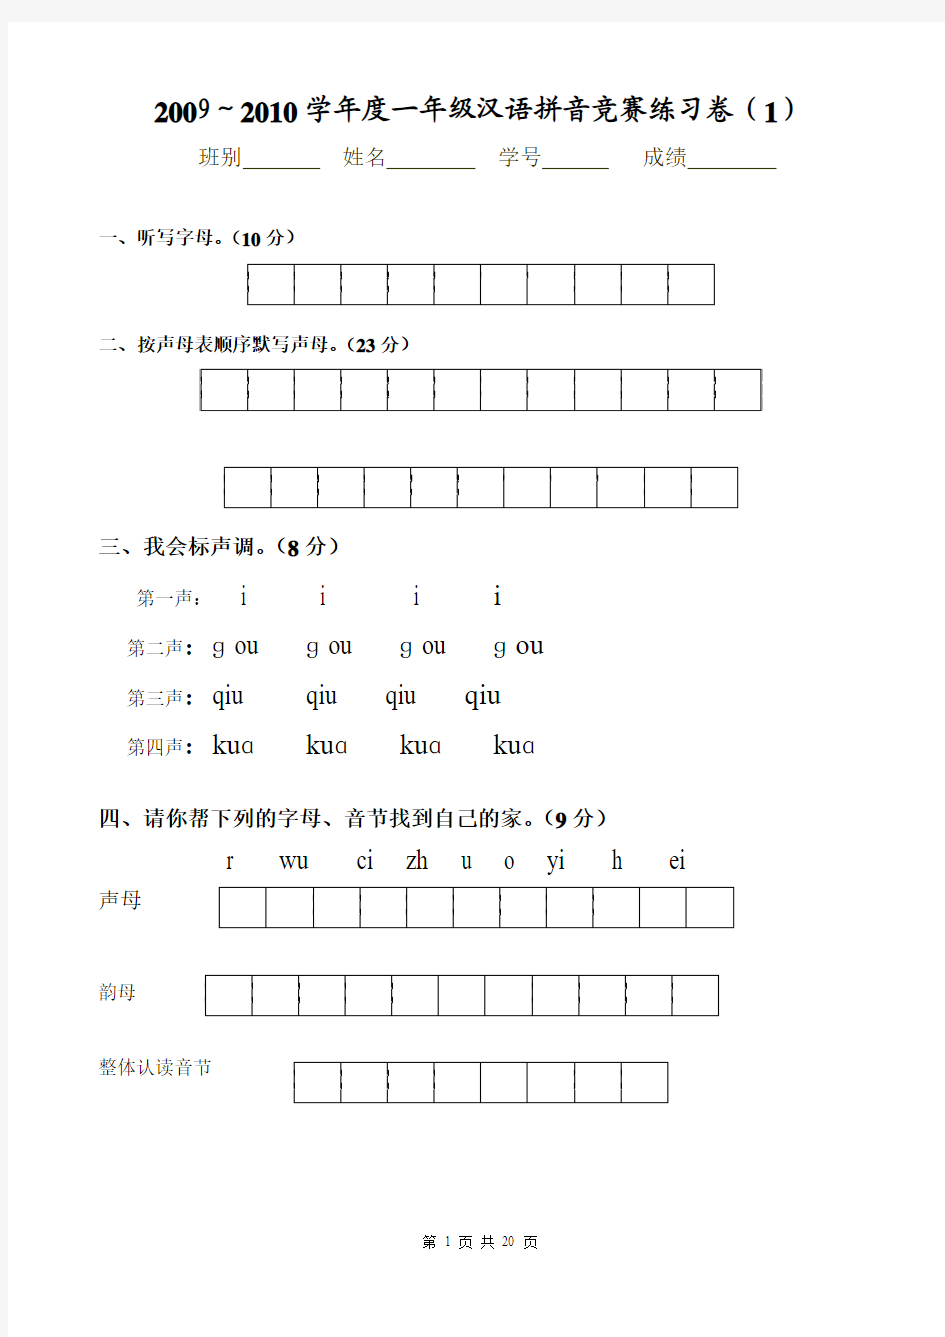 一年级汉语拼音竞赛练习卷(来自网络)